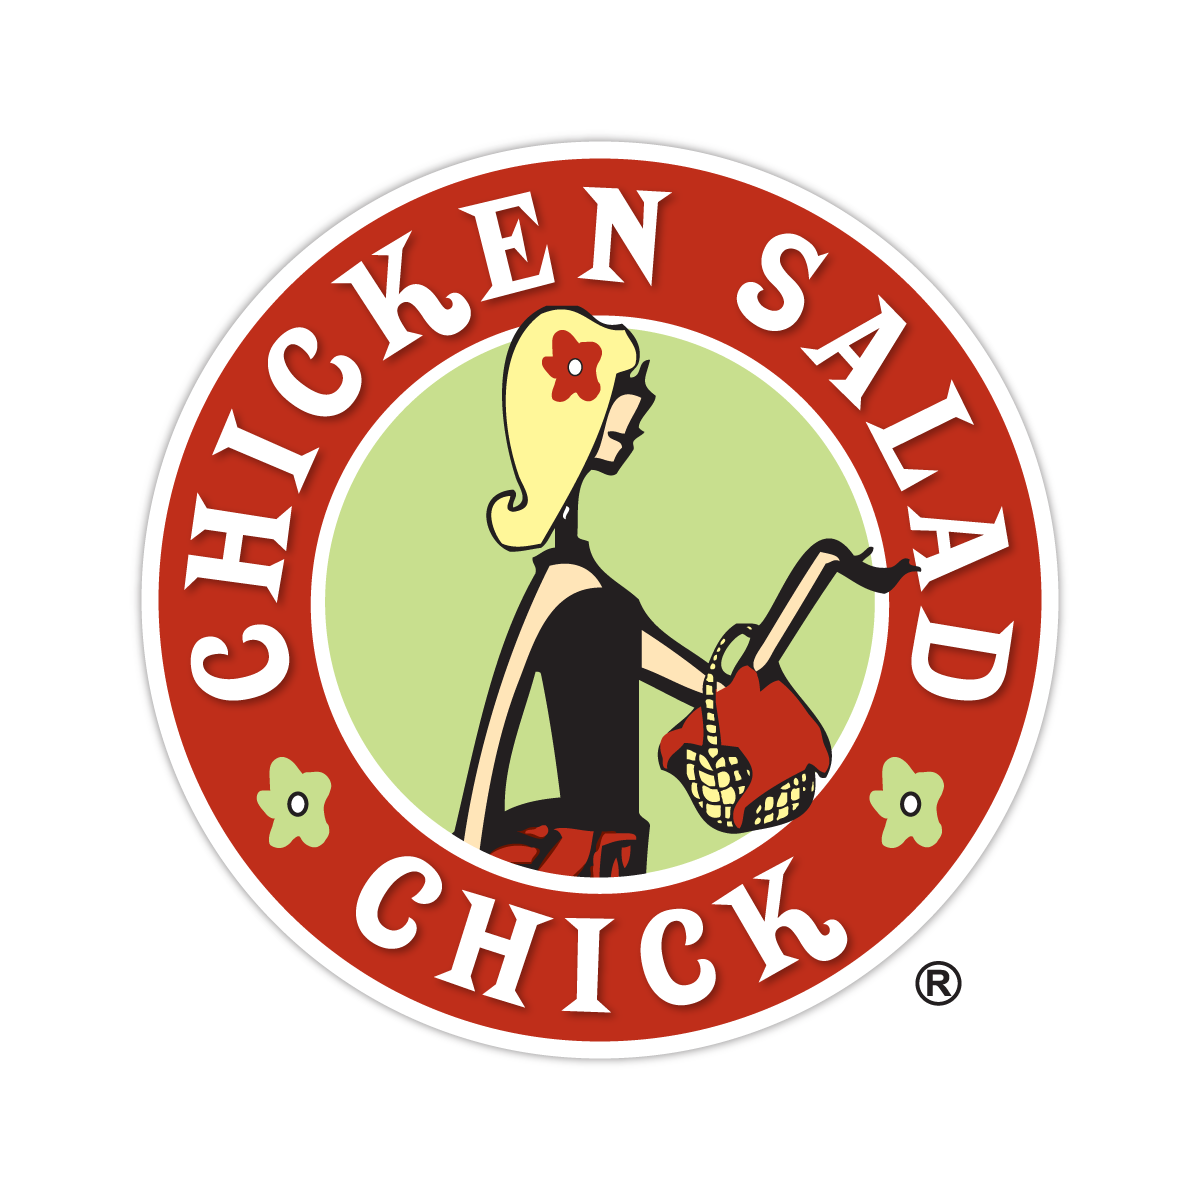 Chicken Salad Chick<br />
Logo Design